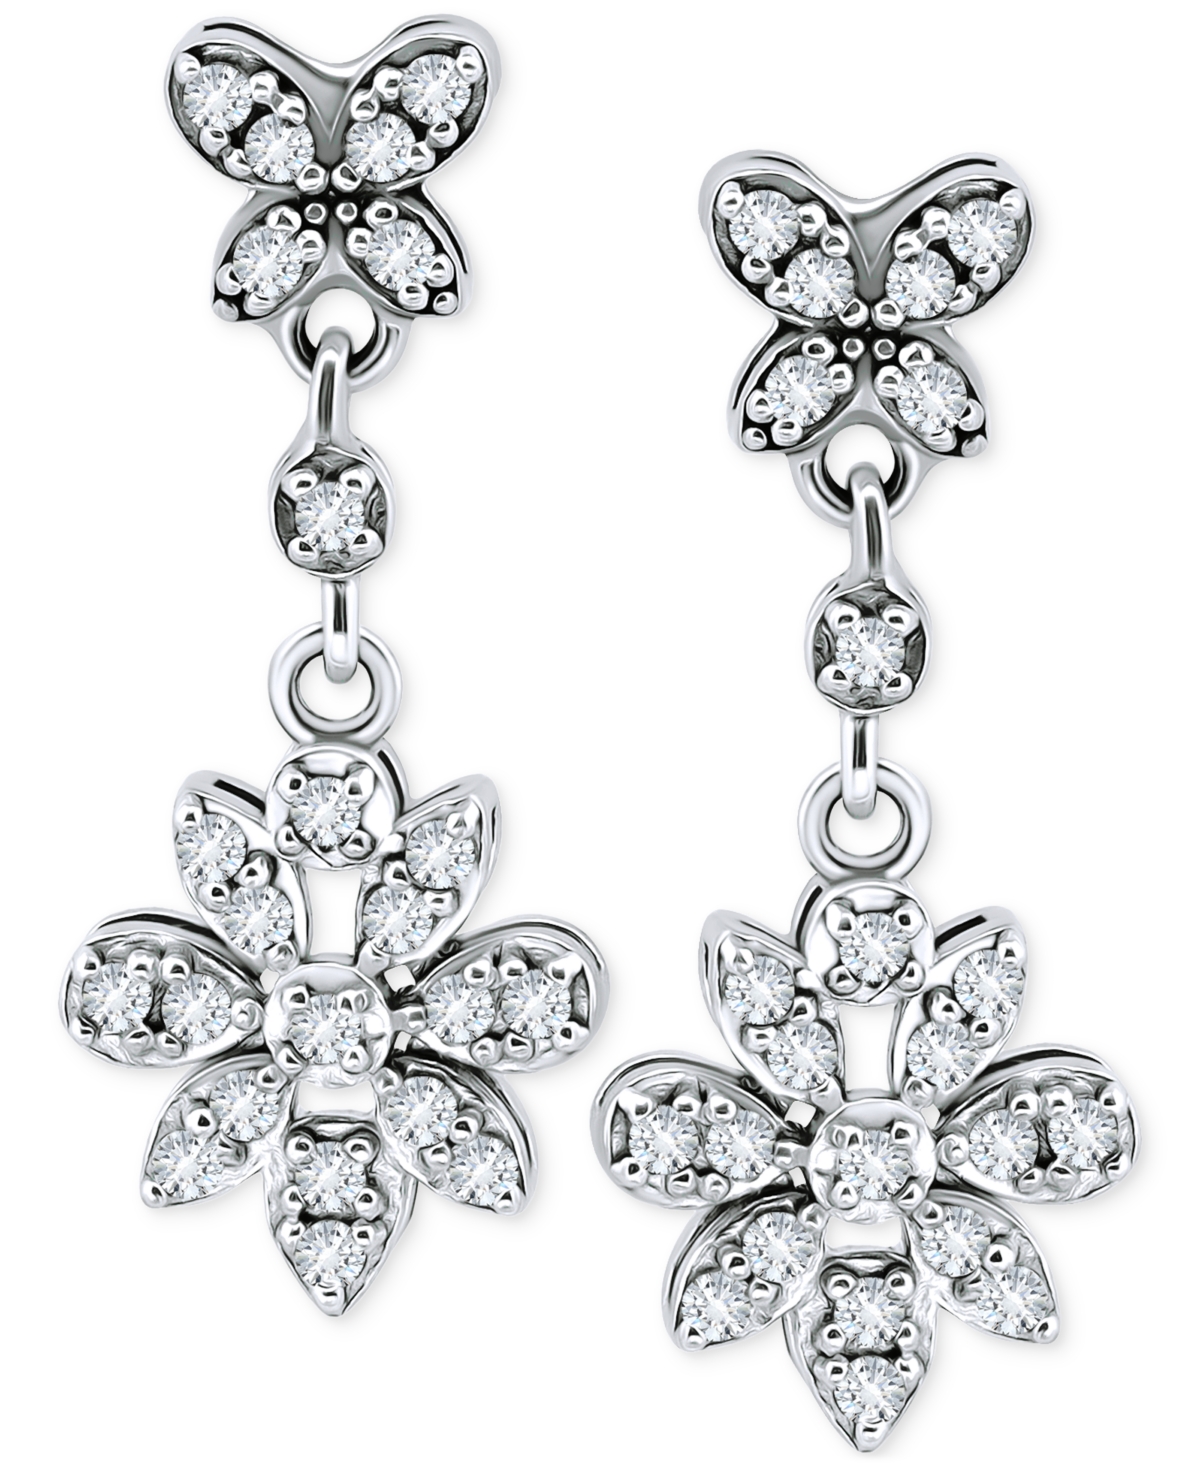 Giani Bernini Cubic Zirconia Flower Drop Earrings In Sterling Silver, Created For Macy's